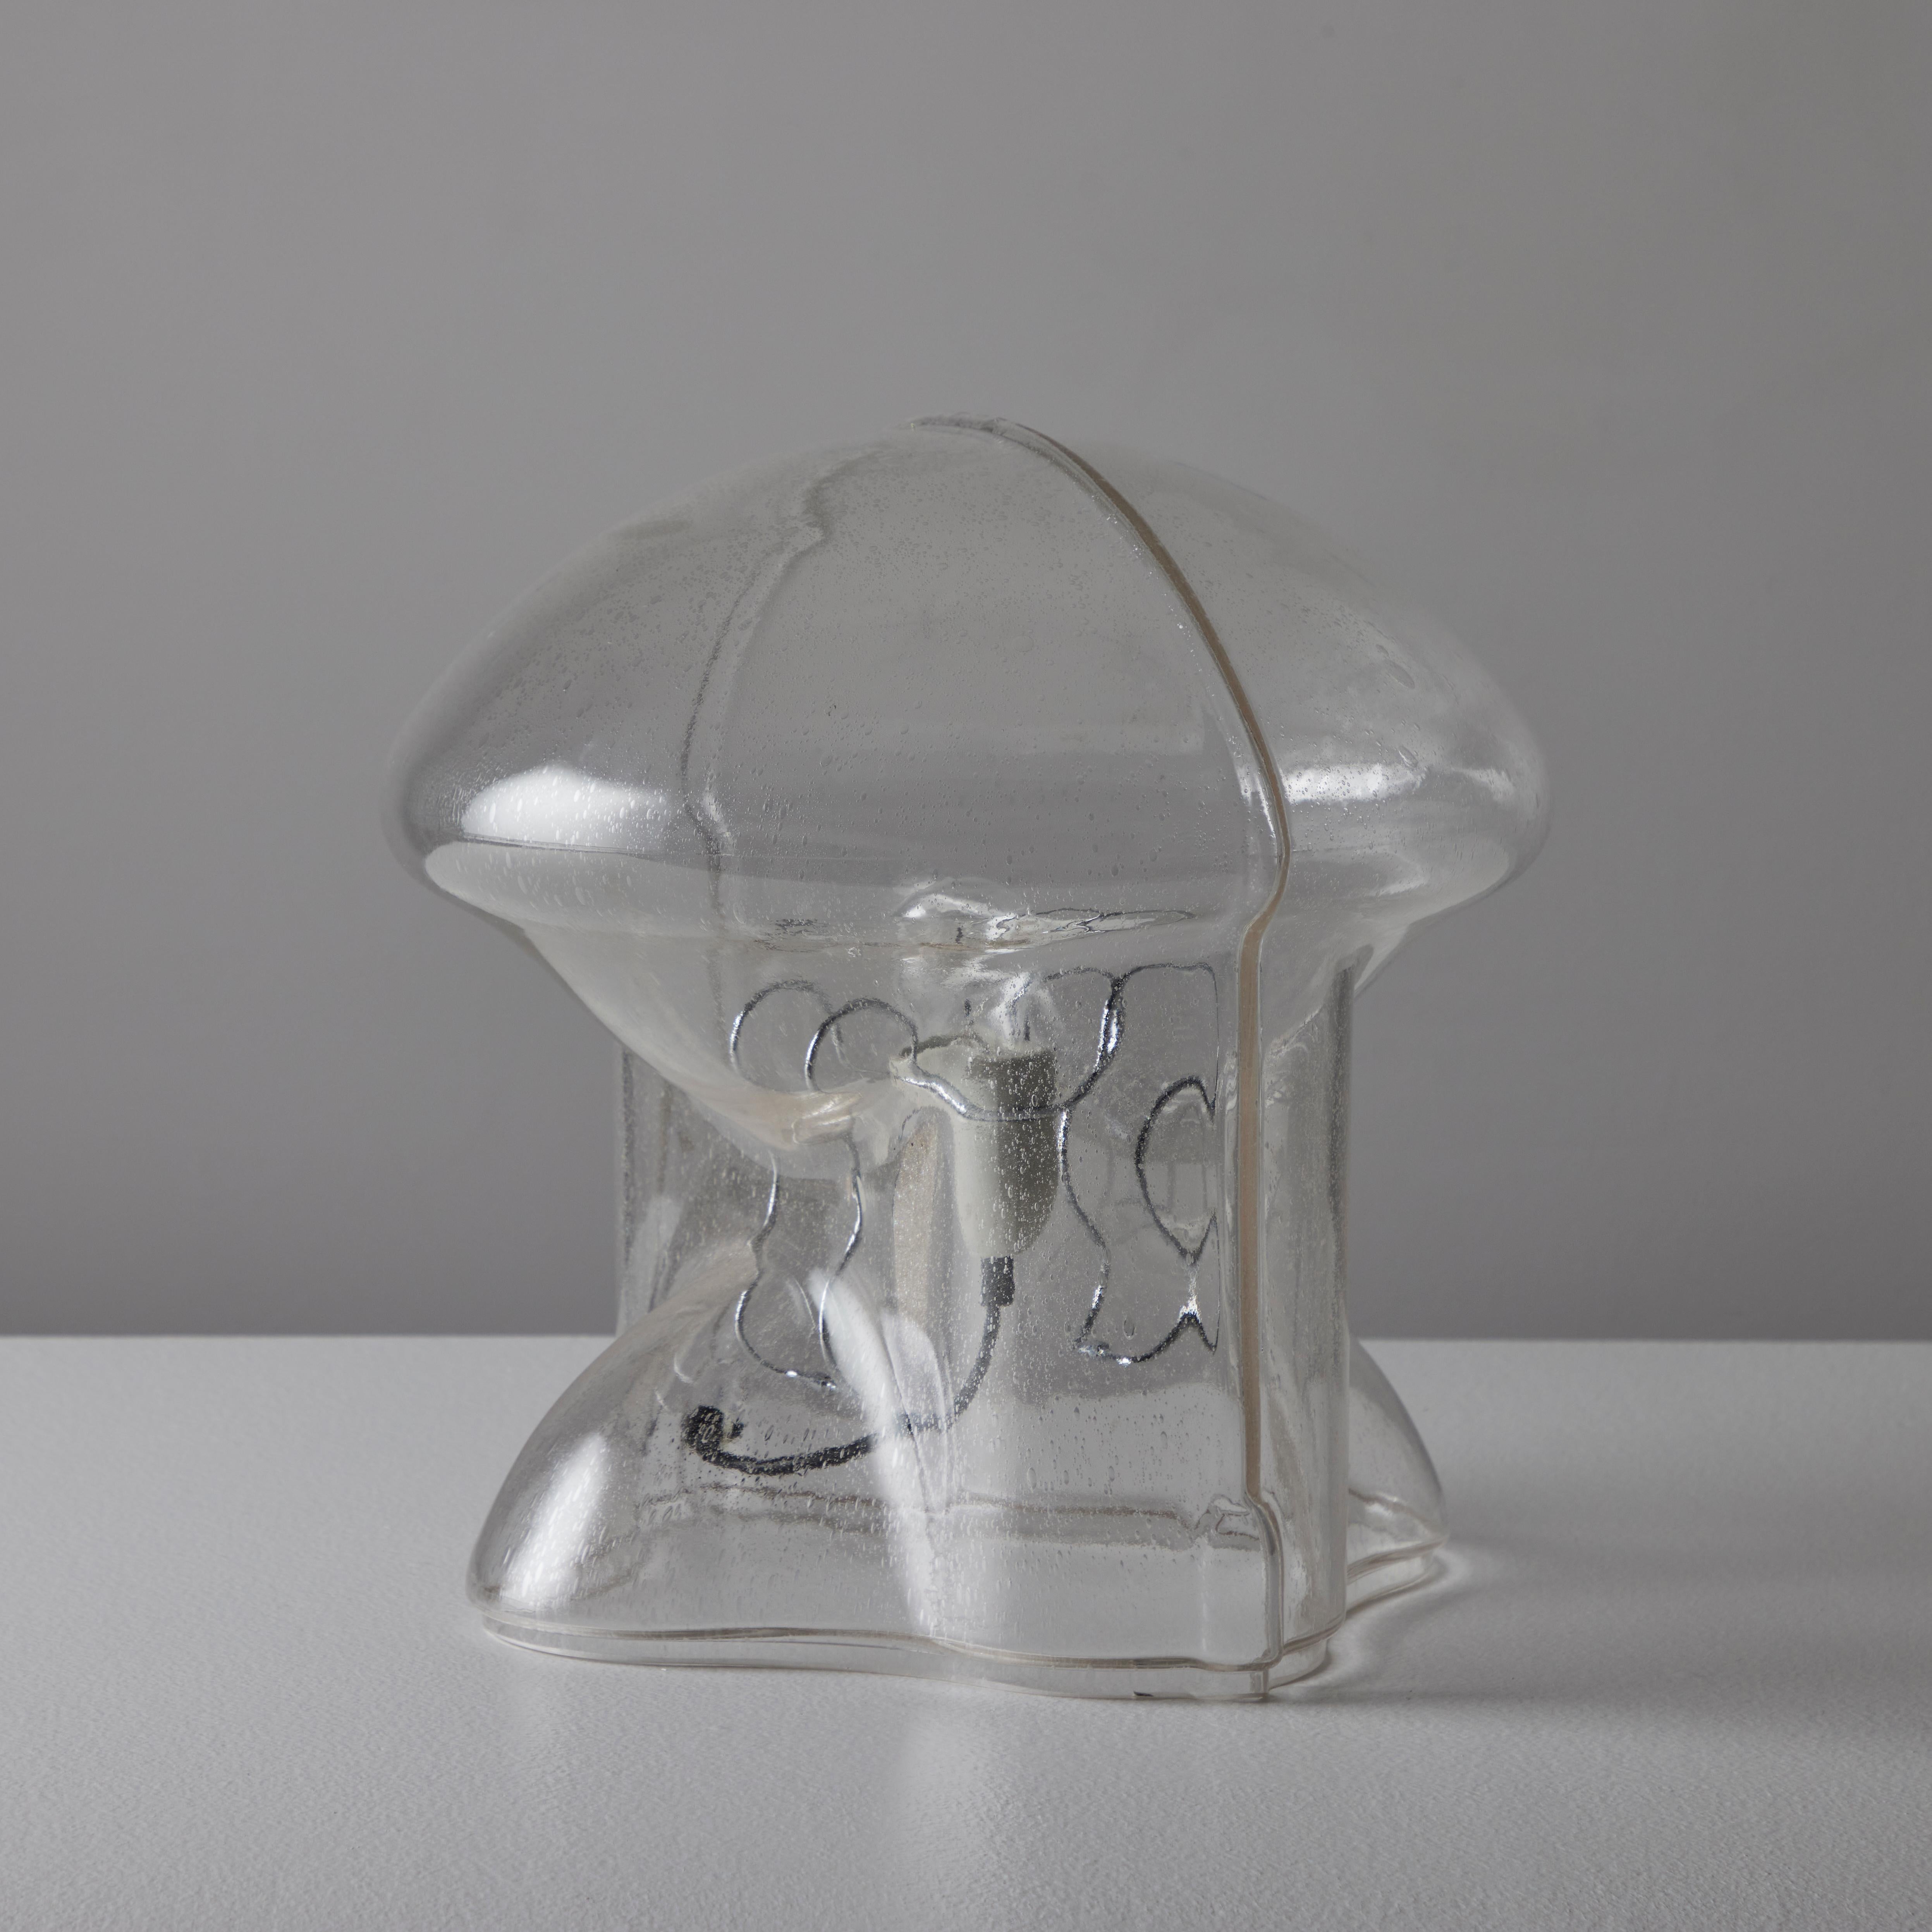 Italian 'Medusa' Table Lamp by Umberto Riva for VeArt